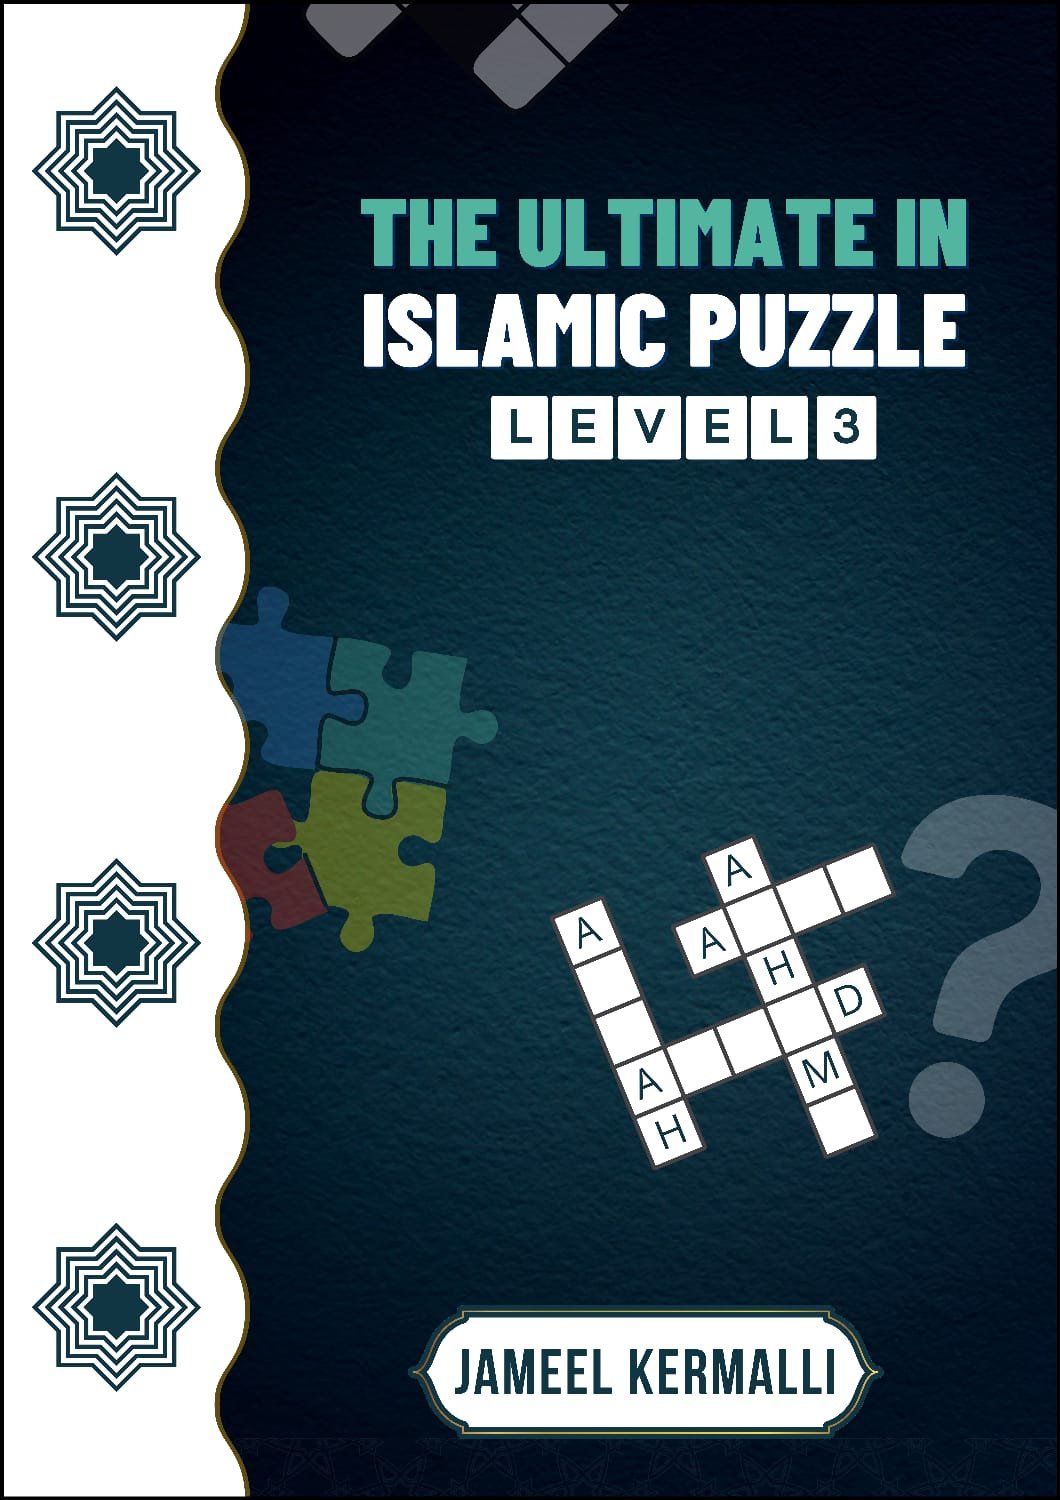 Puzzle Level 3